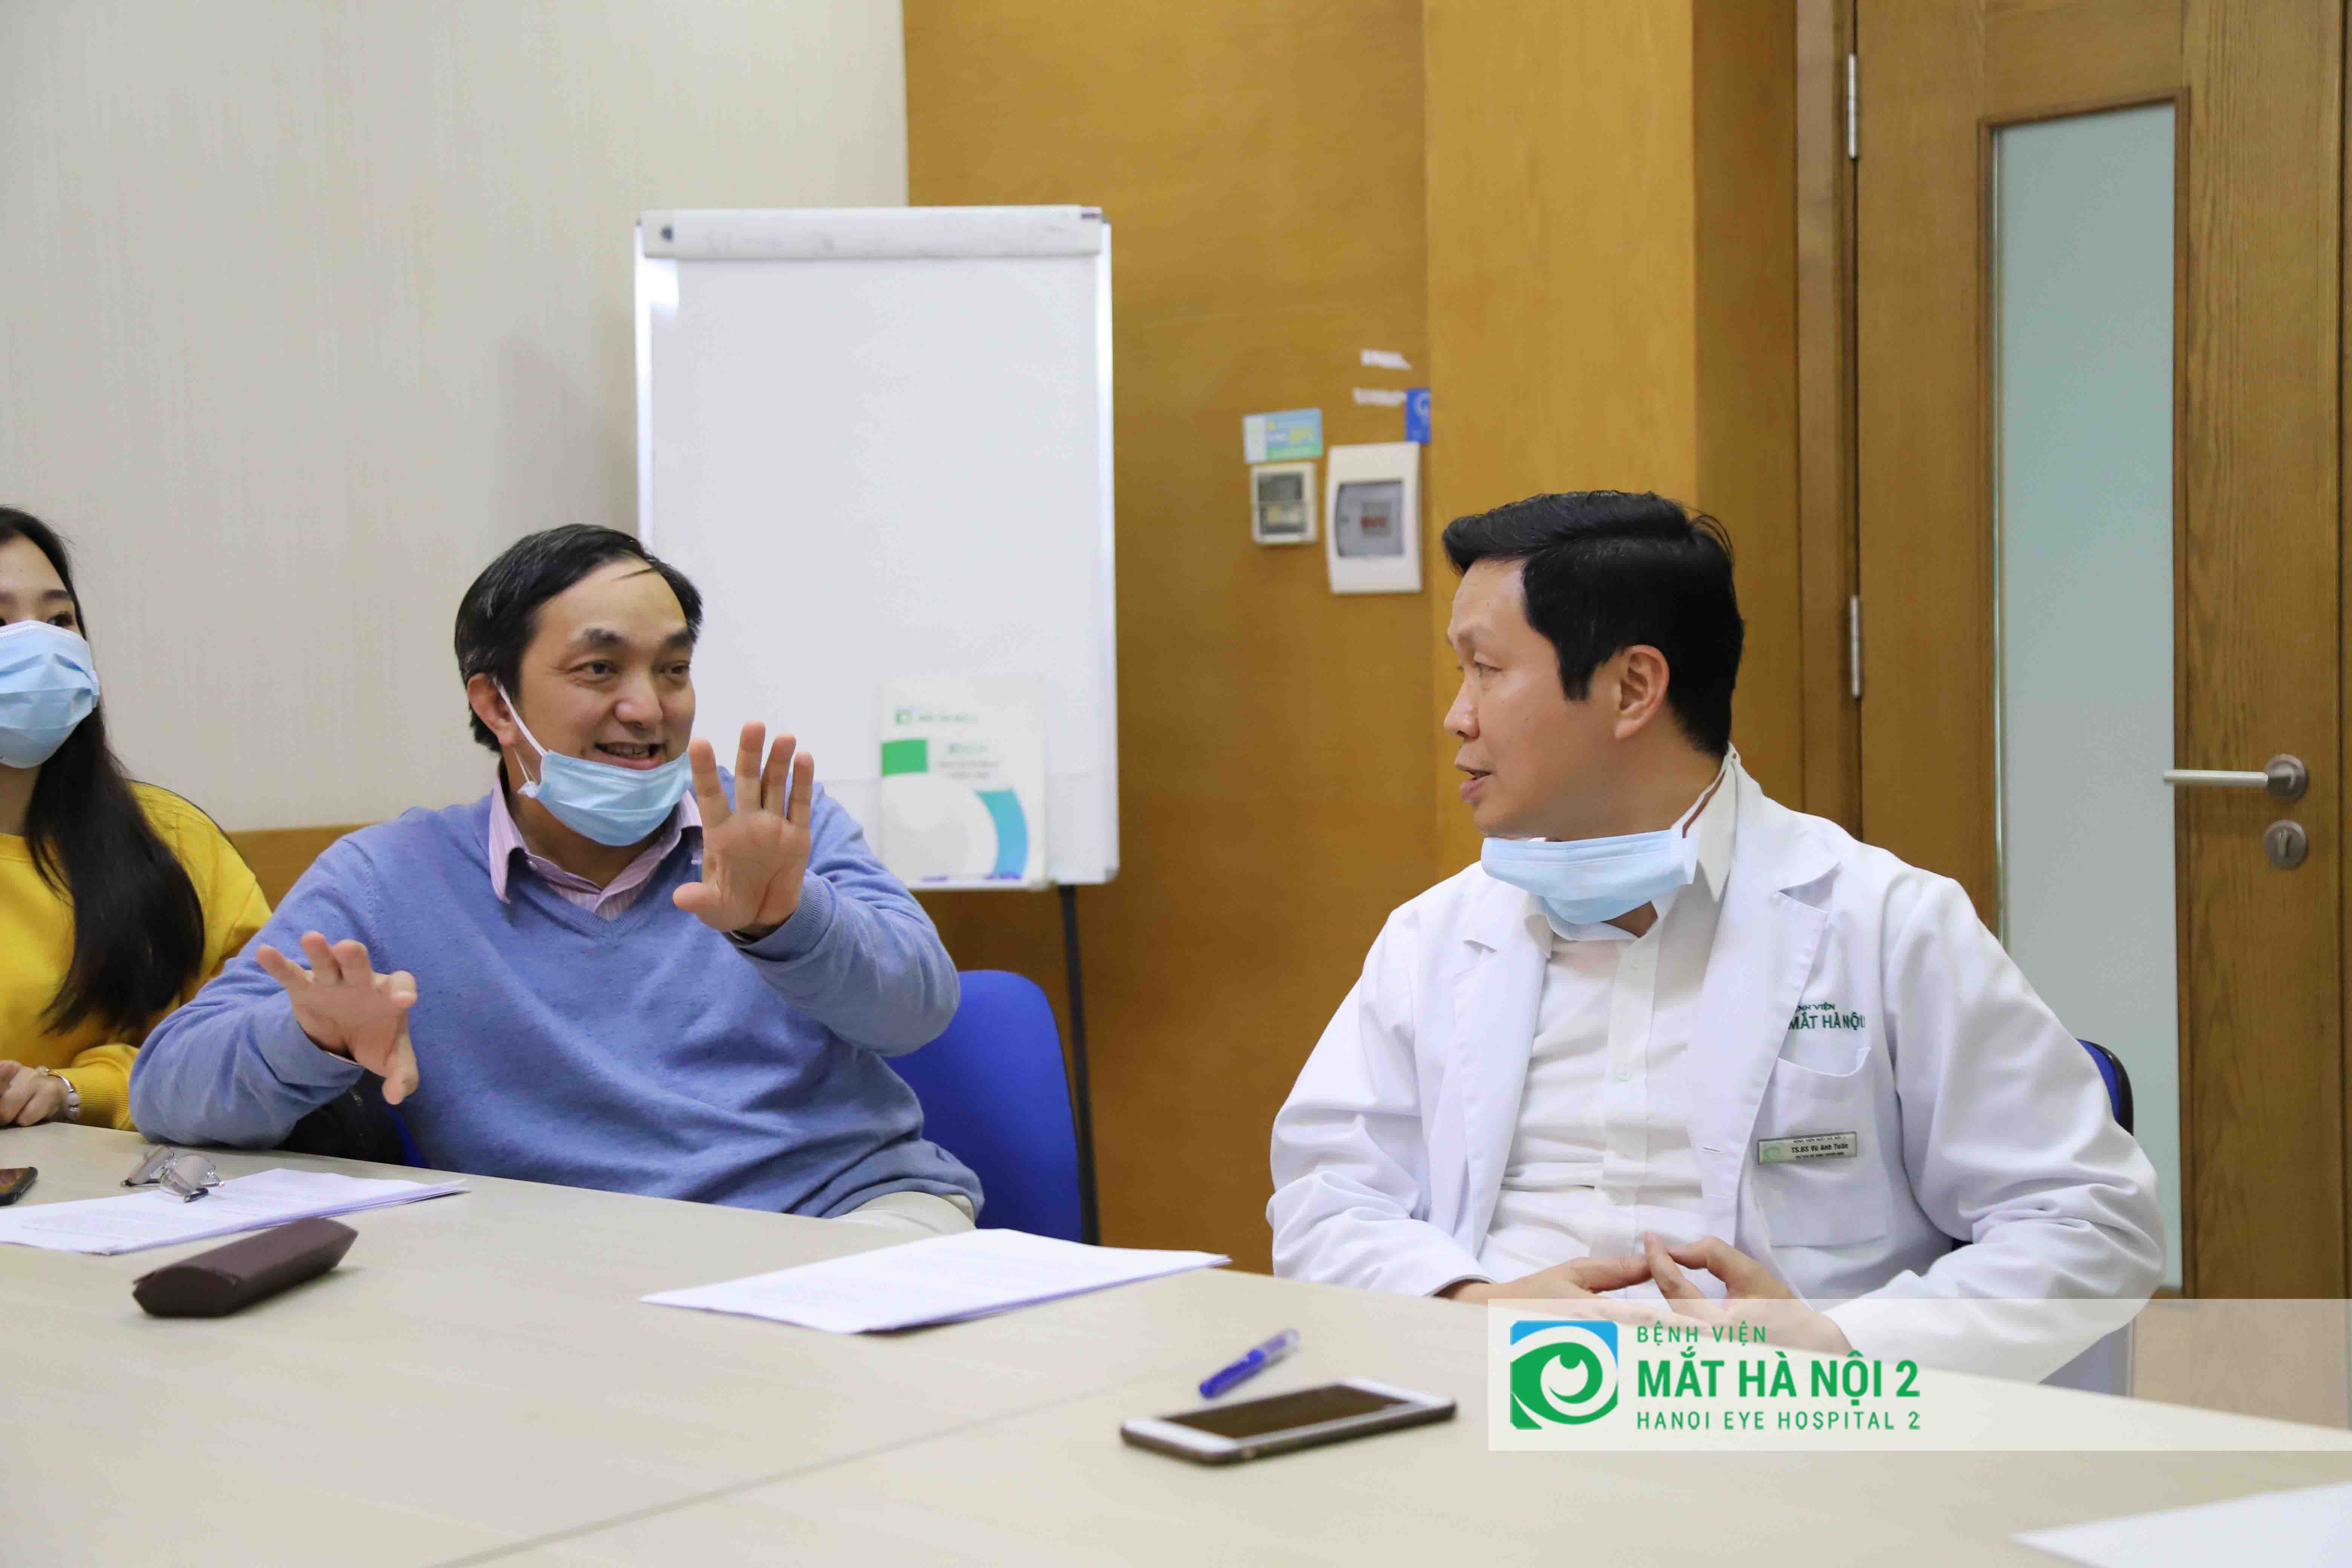 Hội chẩn trực tuyến Bệnh viện Mắt Hà Nội 2 chuyên gia Nhật Bản